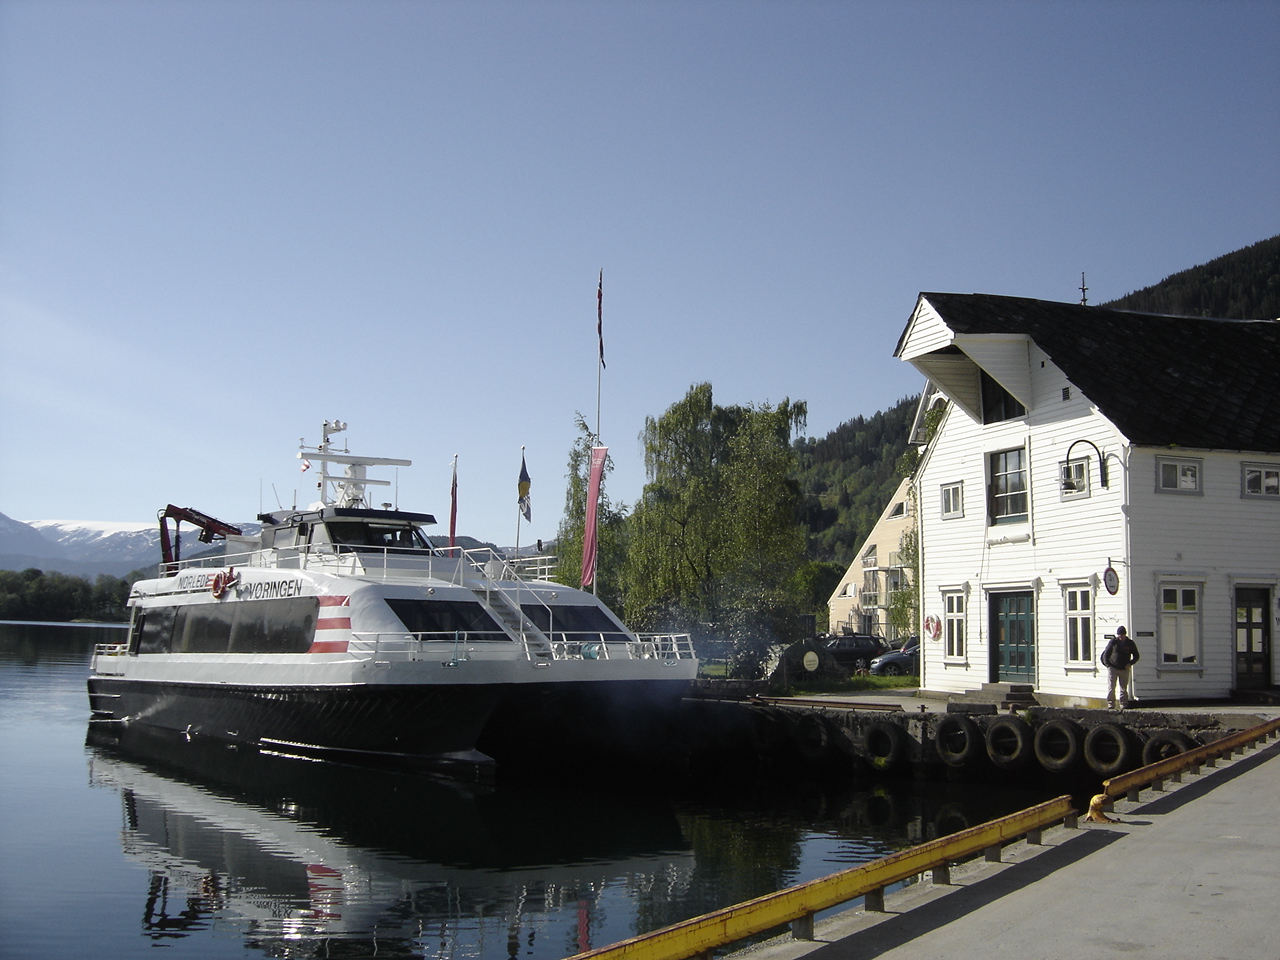 MS Vøringen at the quay in Norheimsund. © Anne Gullbjørg Digranes